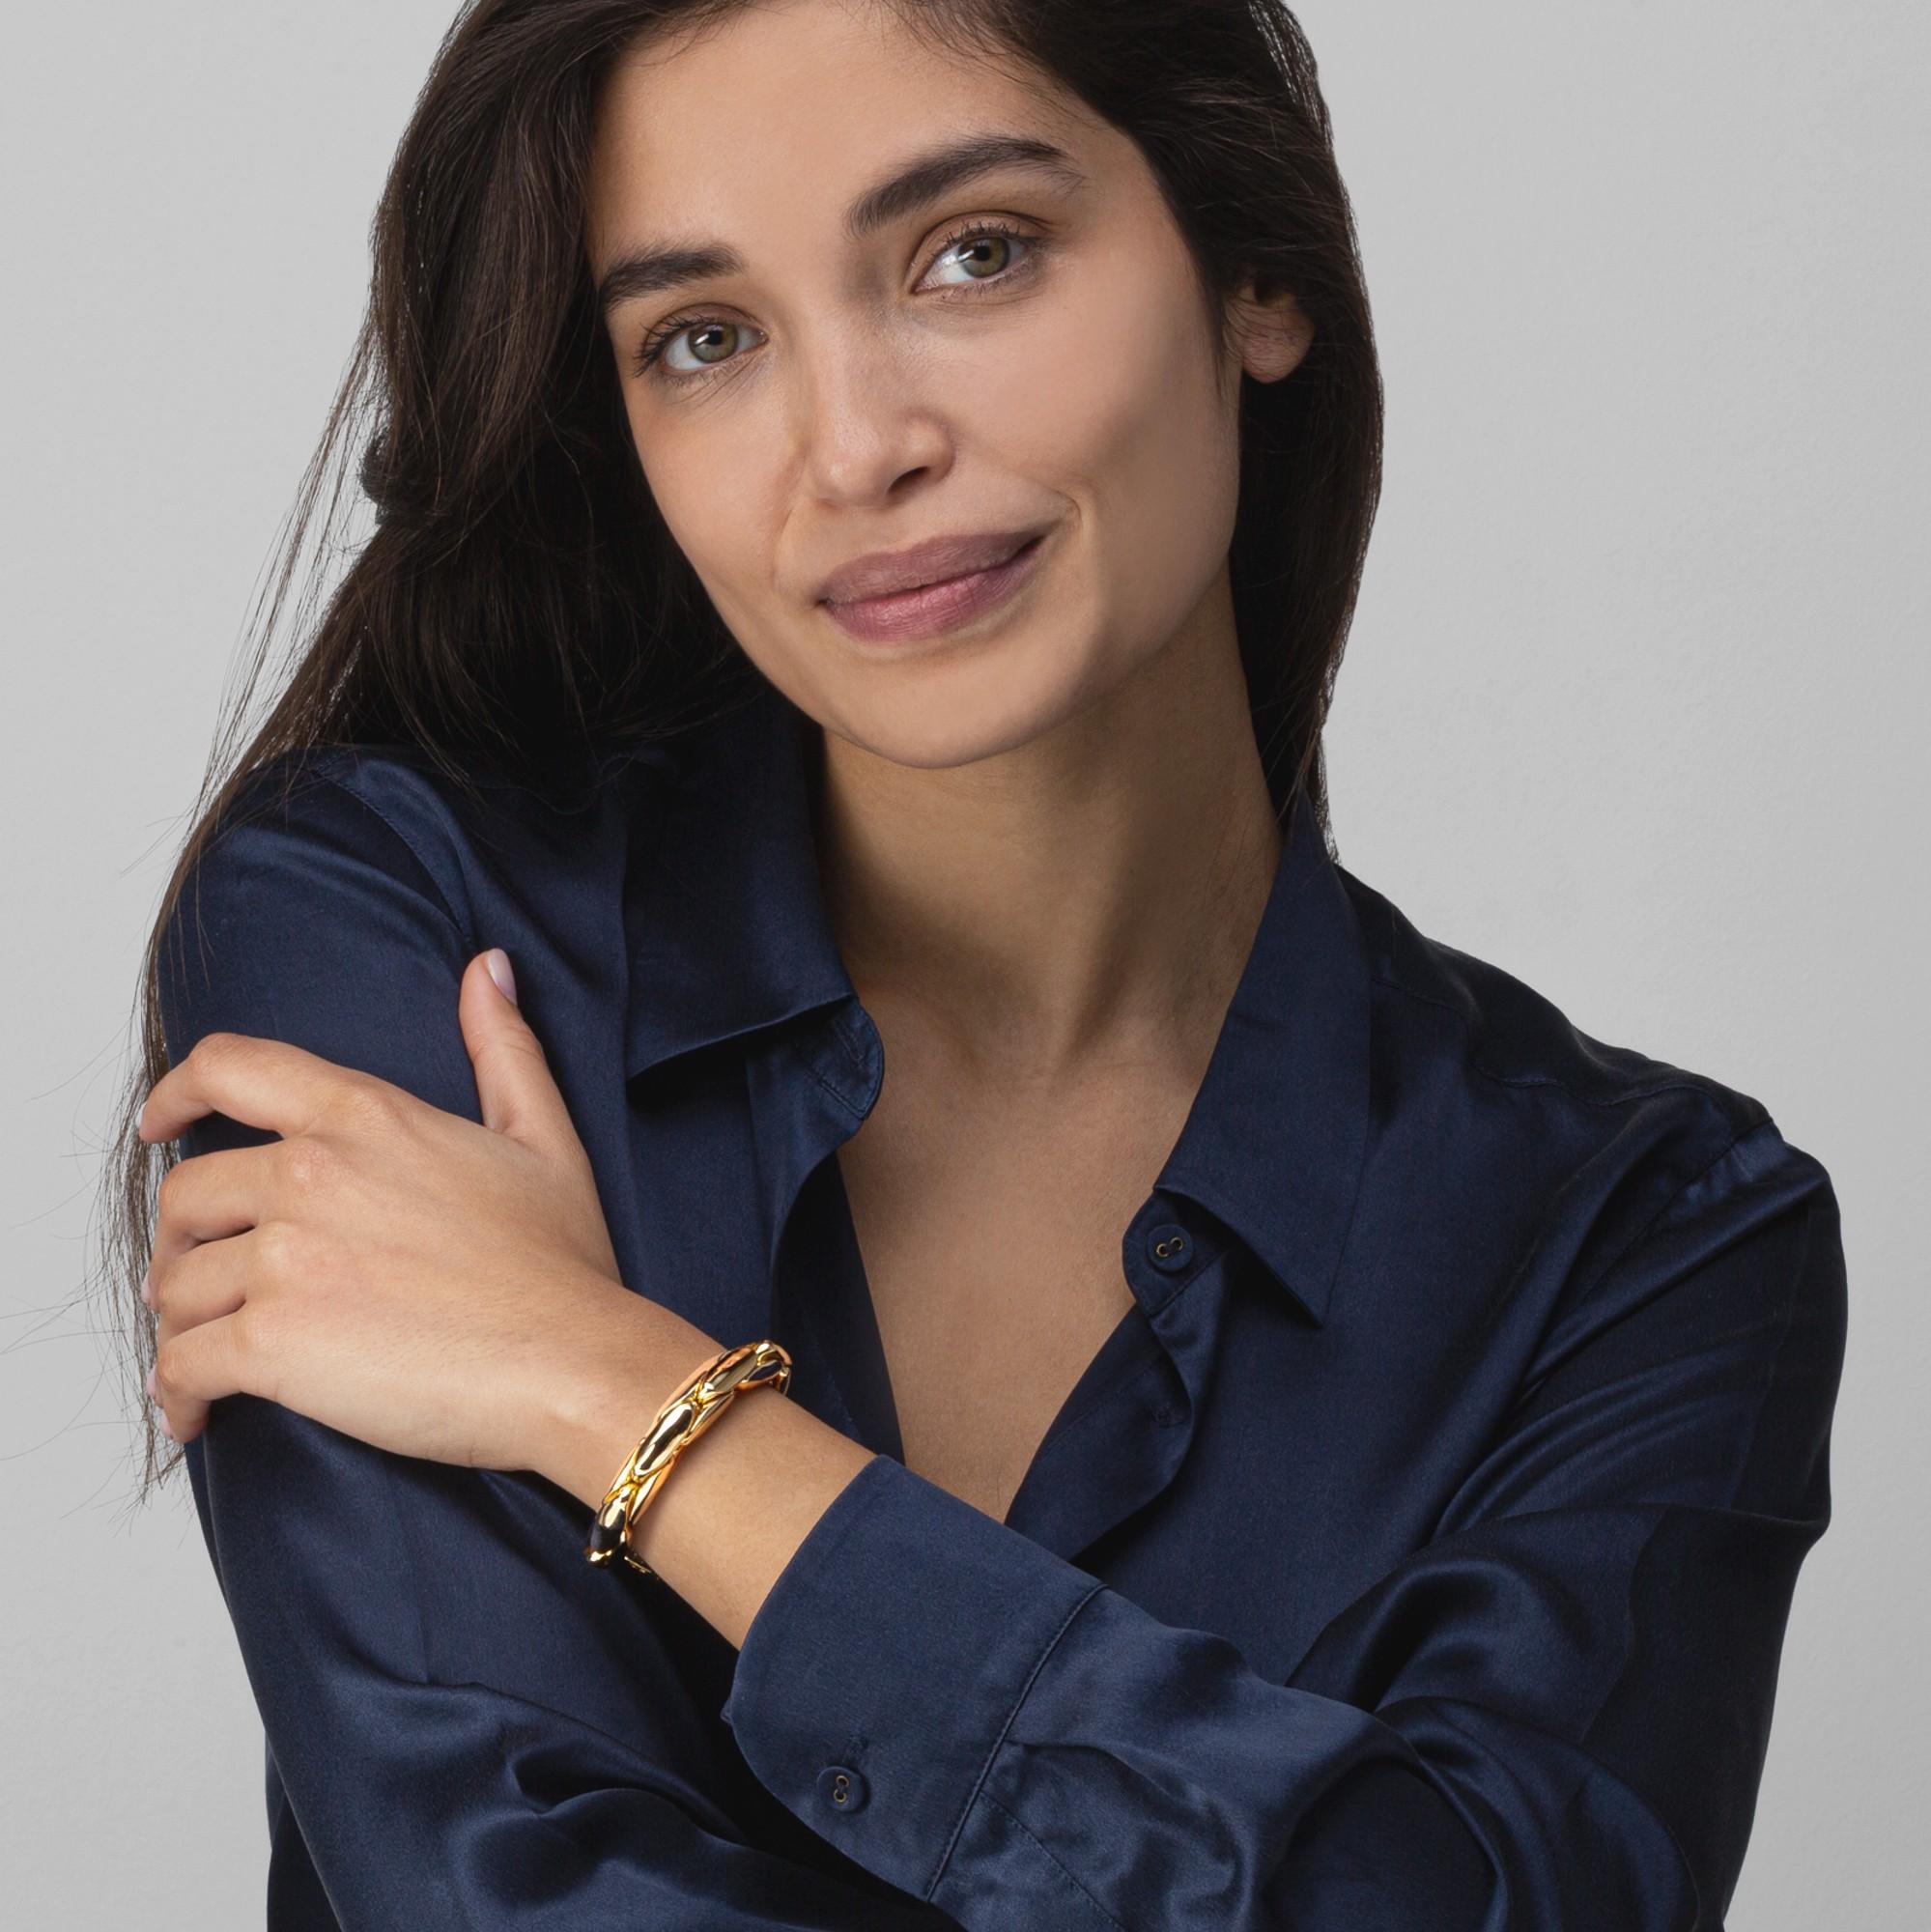 Alex Jona Design Kollektion, handgefertigt in Italien, 18 Karat Gelbgold, flexibles Gliederarmband.

Die Juwelen von Alex Jona zeichnen sich nicht nur durch ihr besonderes Design und die hervorragende Qualität der Edelsteine aus, sondern auch durch